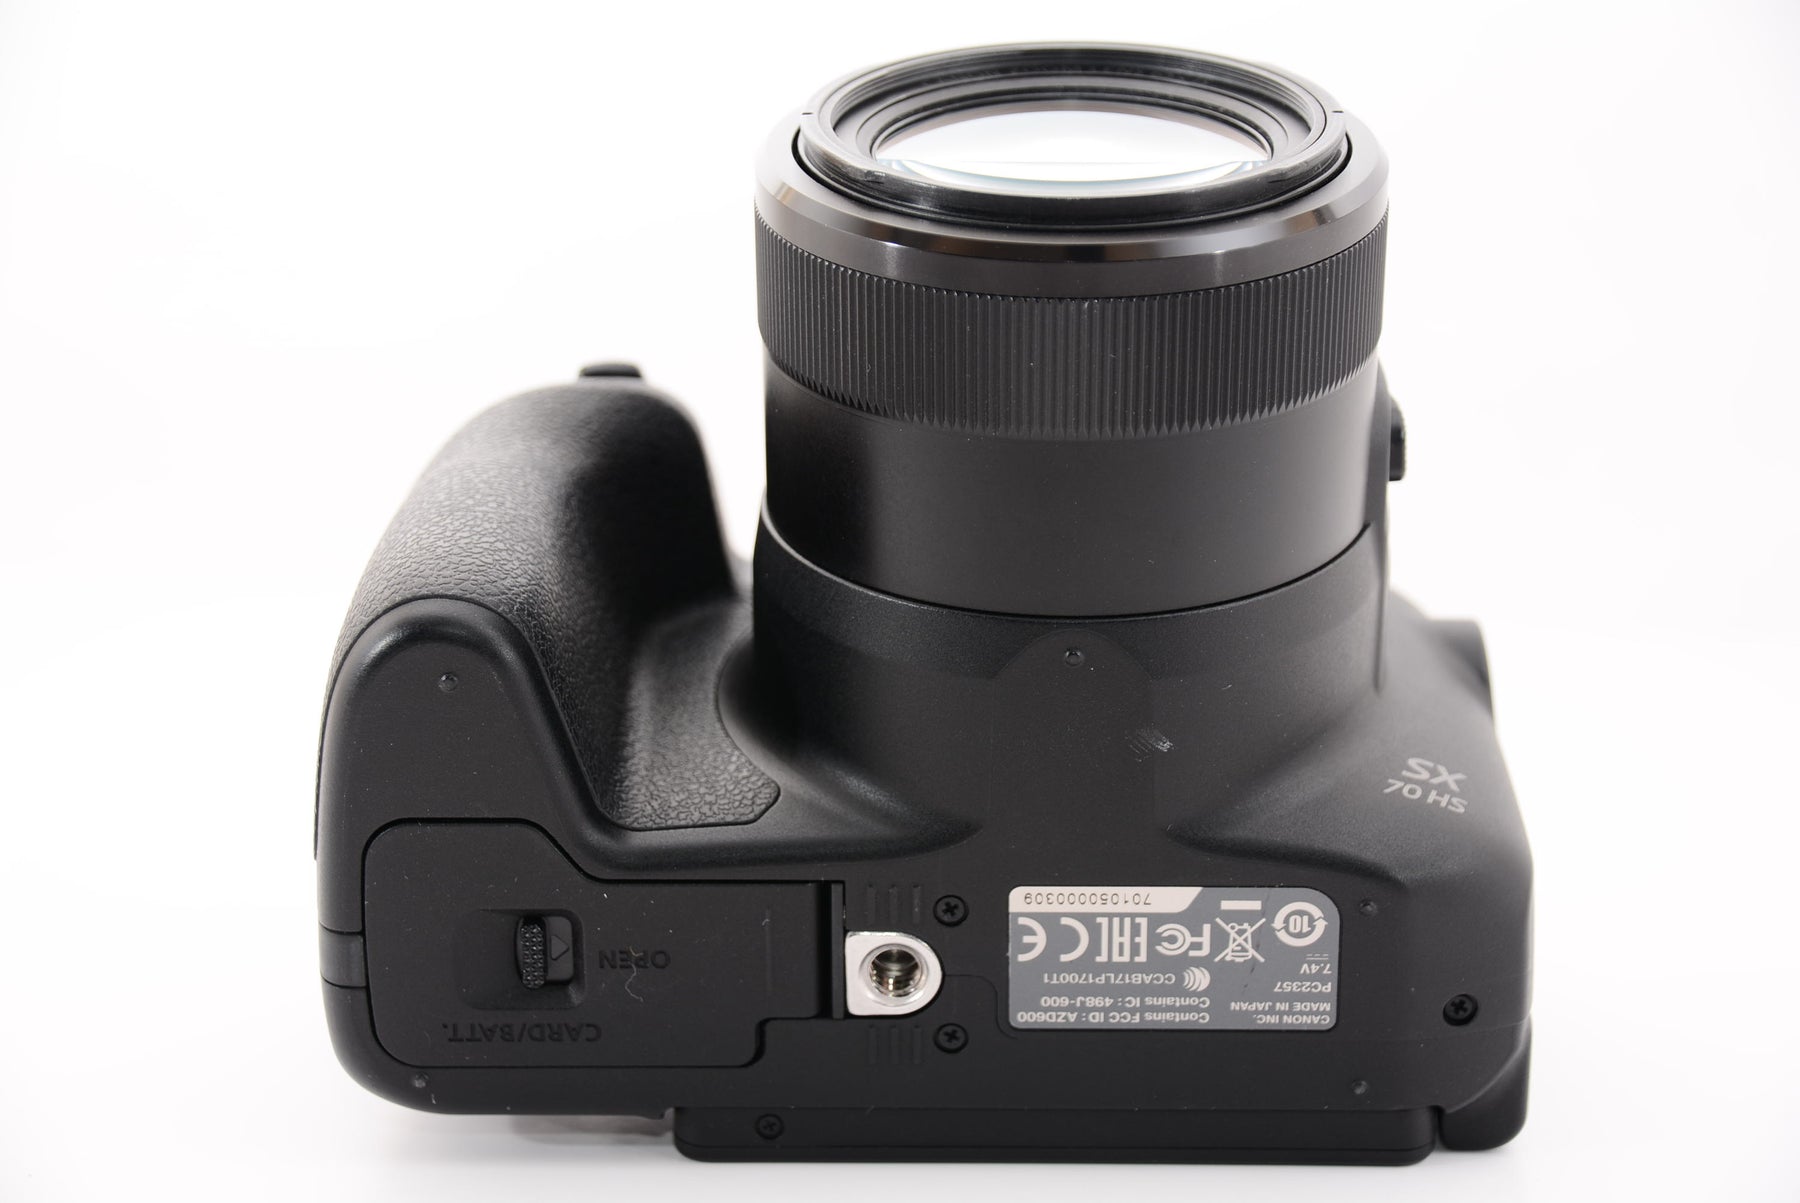 Canon コンパクトデジタルカメラ PowerShot V POWERSHOT